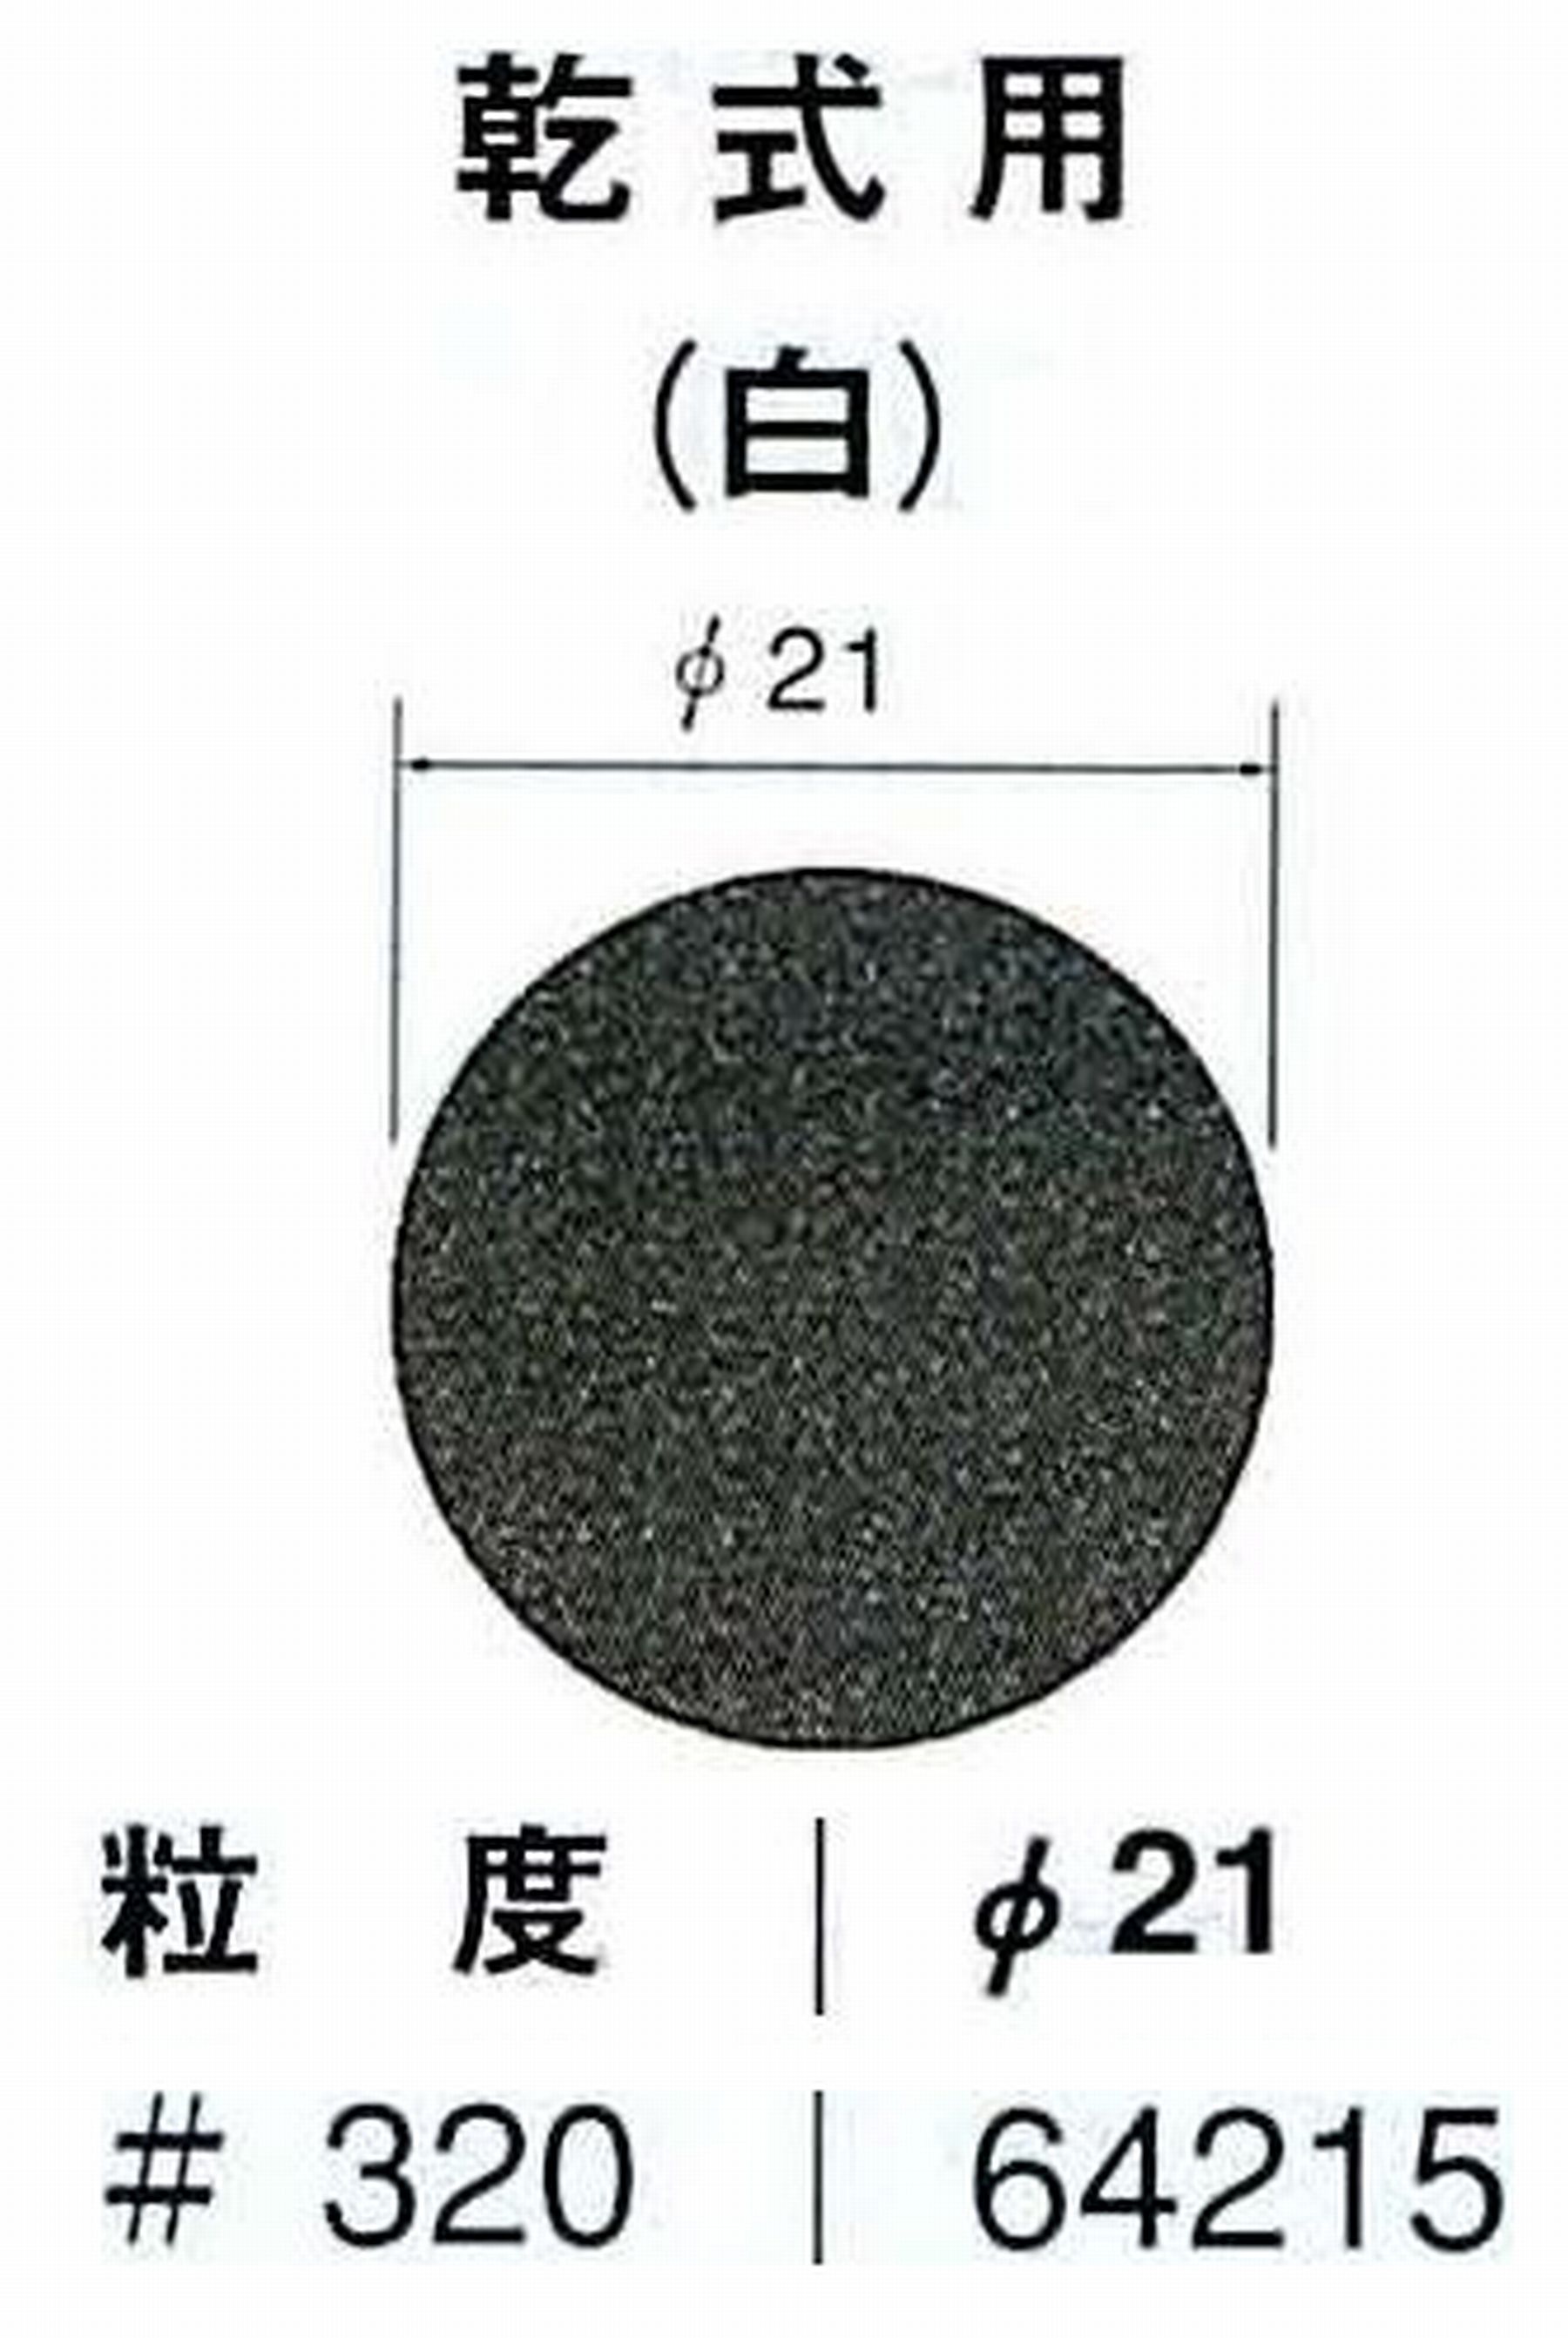 ナカニシ/NAKANISHI アングルグラインダ(電動・エアー) アングルアタッチメント専用工具 サンドペーパーディスク(紙基材タイプ)裏面のり処理 64215